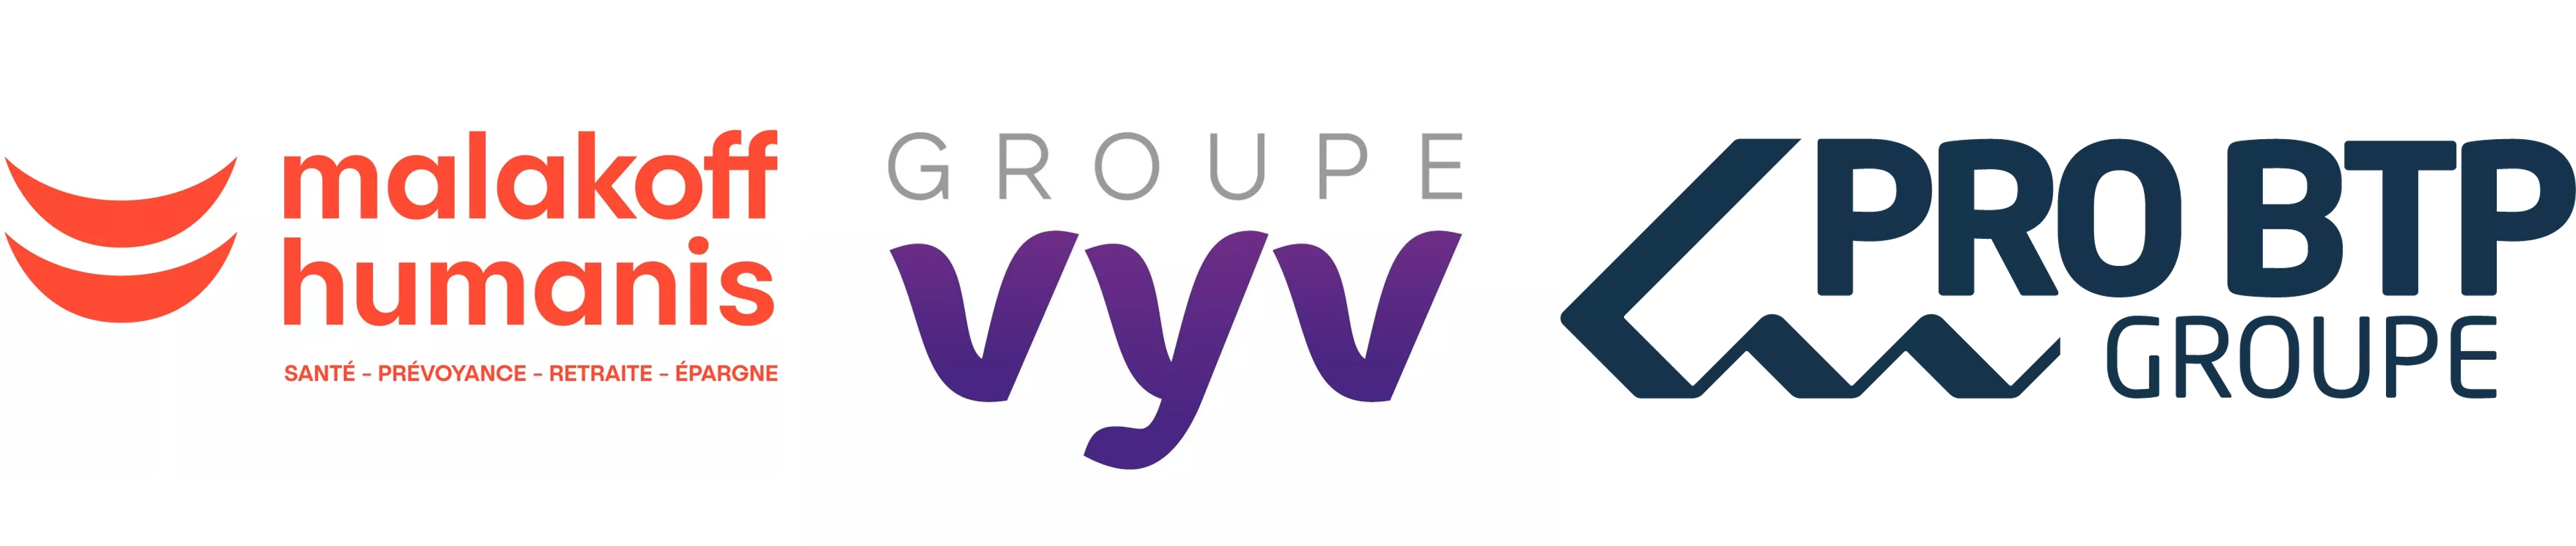 MH groupe VYV Pro BTP Groupe logo & Ohana & co